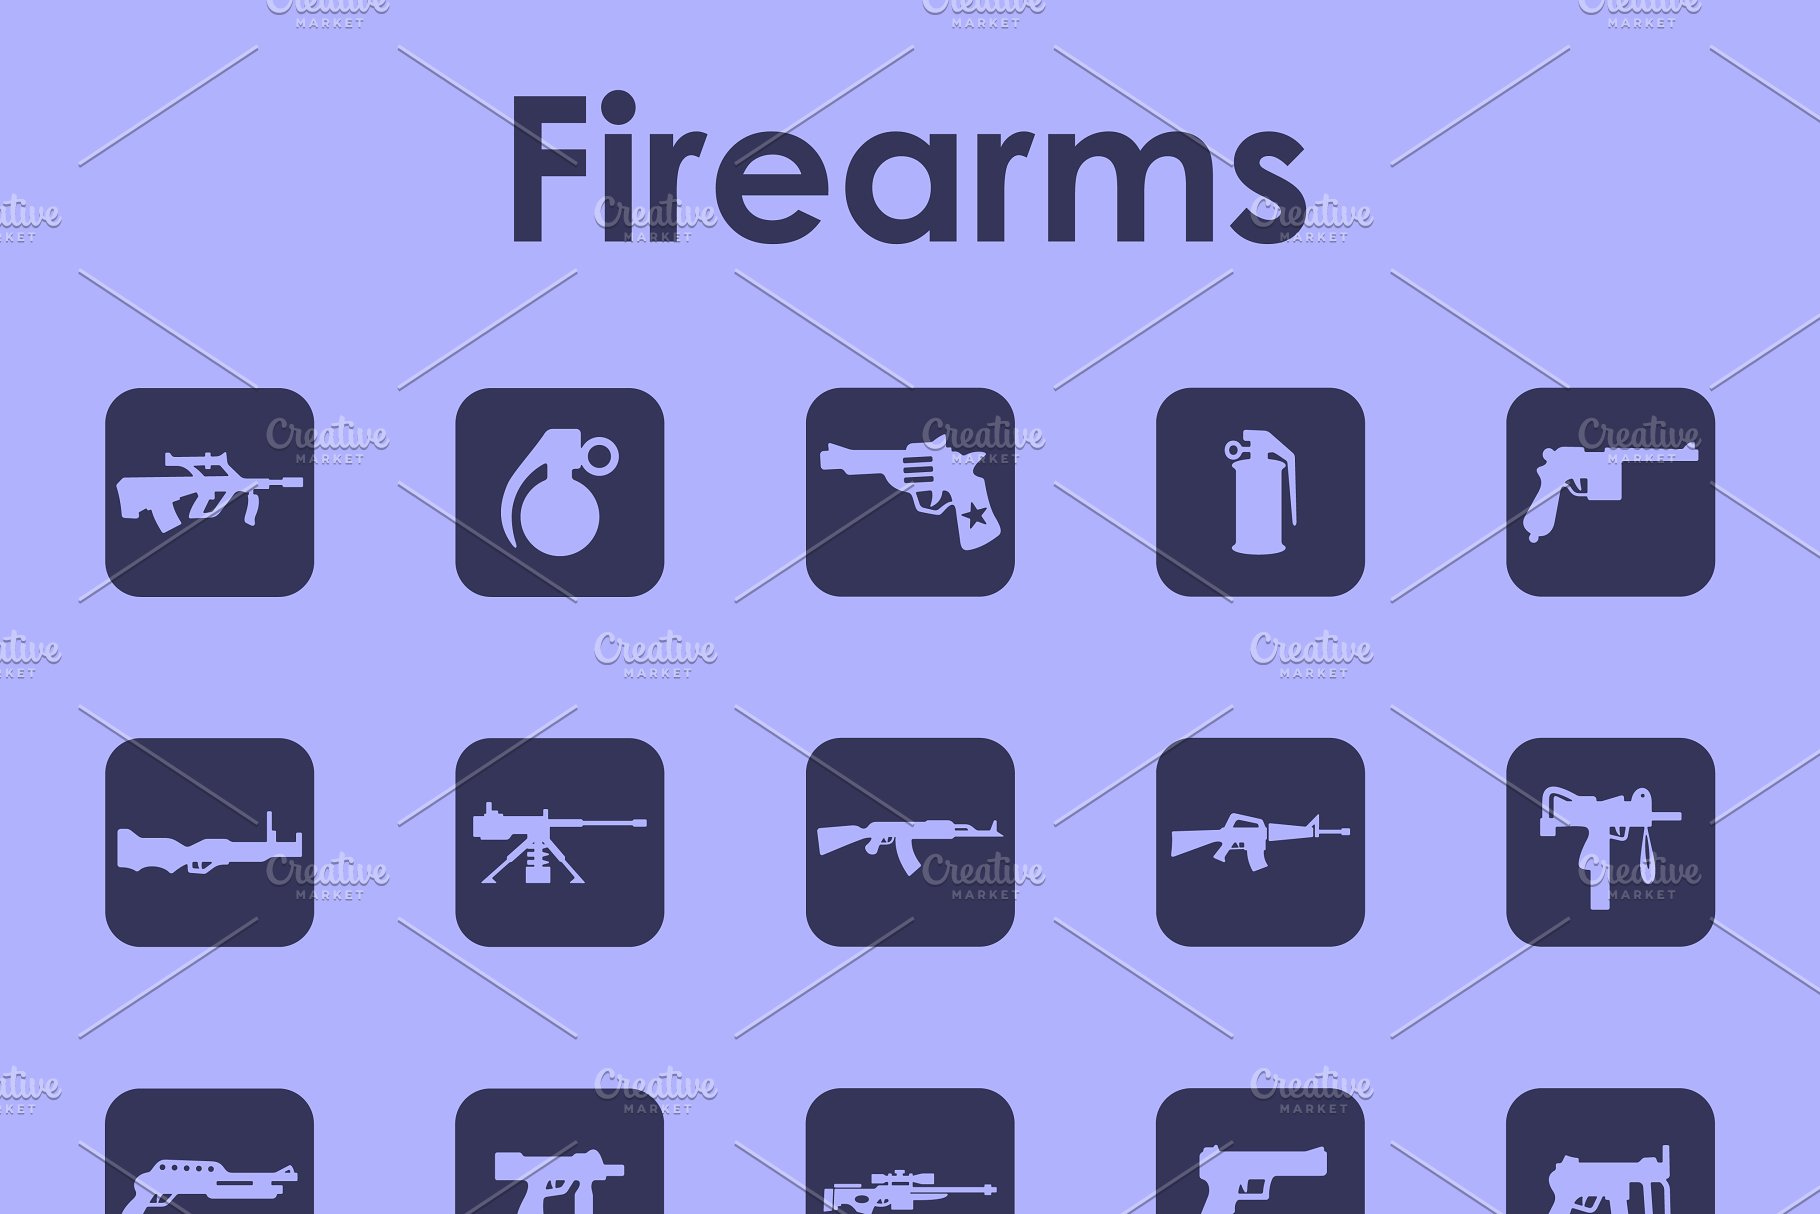 各类枪支简约图标素材 firearms simple icons插图(1)